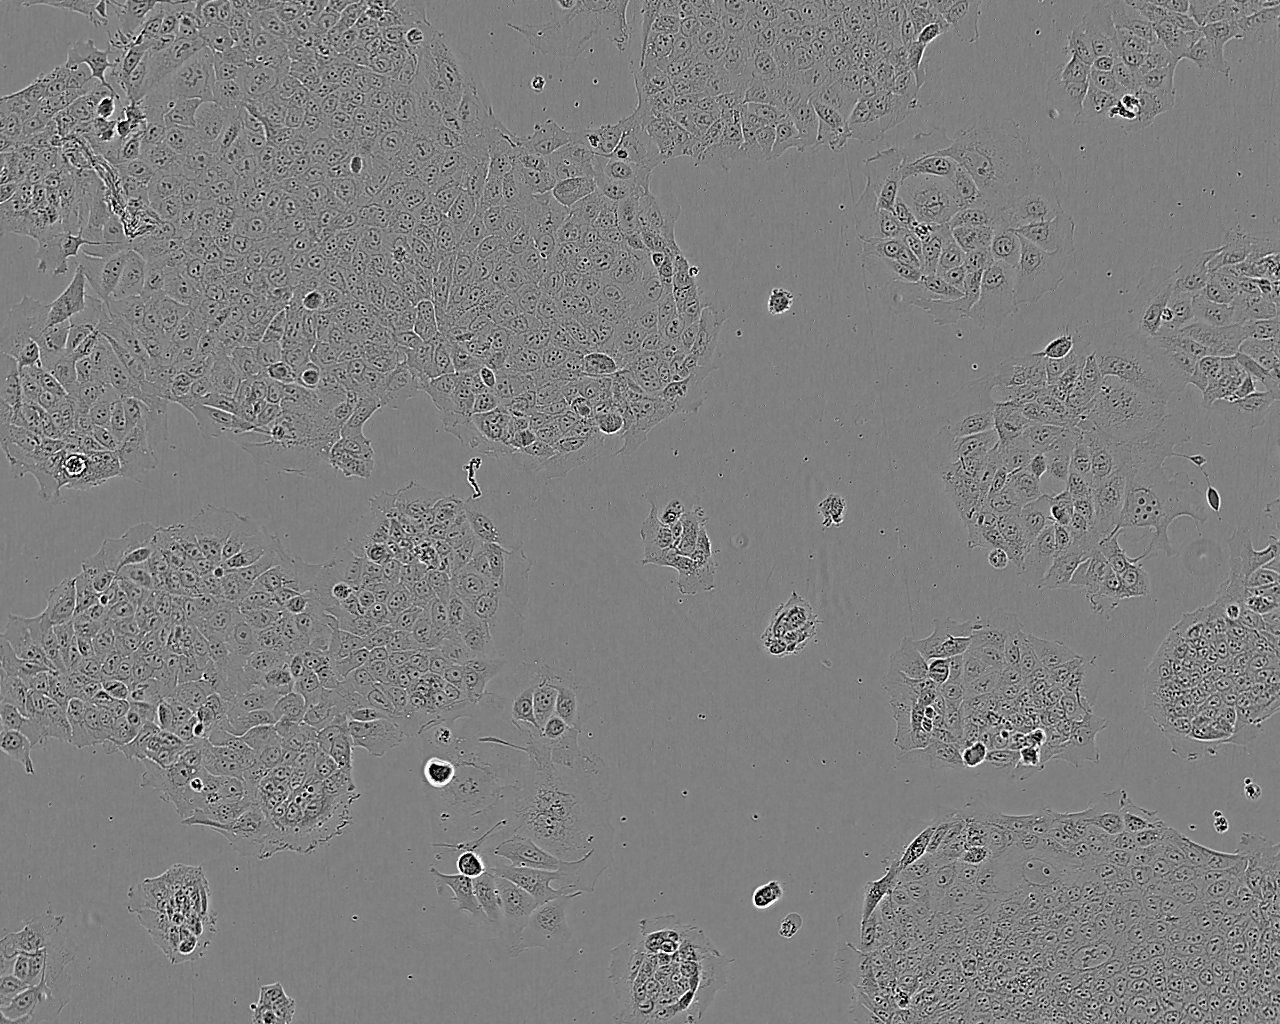 BT-474 cell line人乳腺导管瘤细胞系,BT-474 cell line